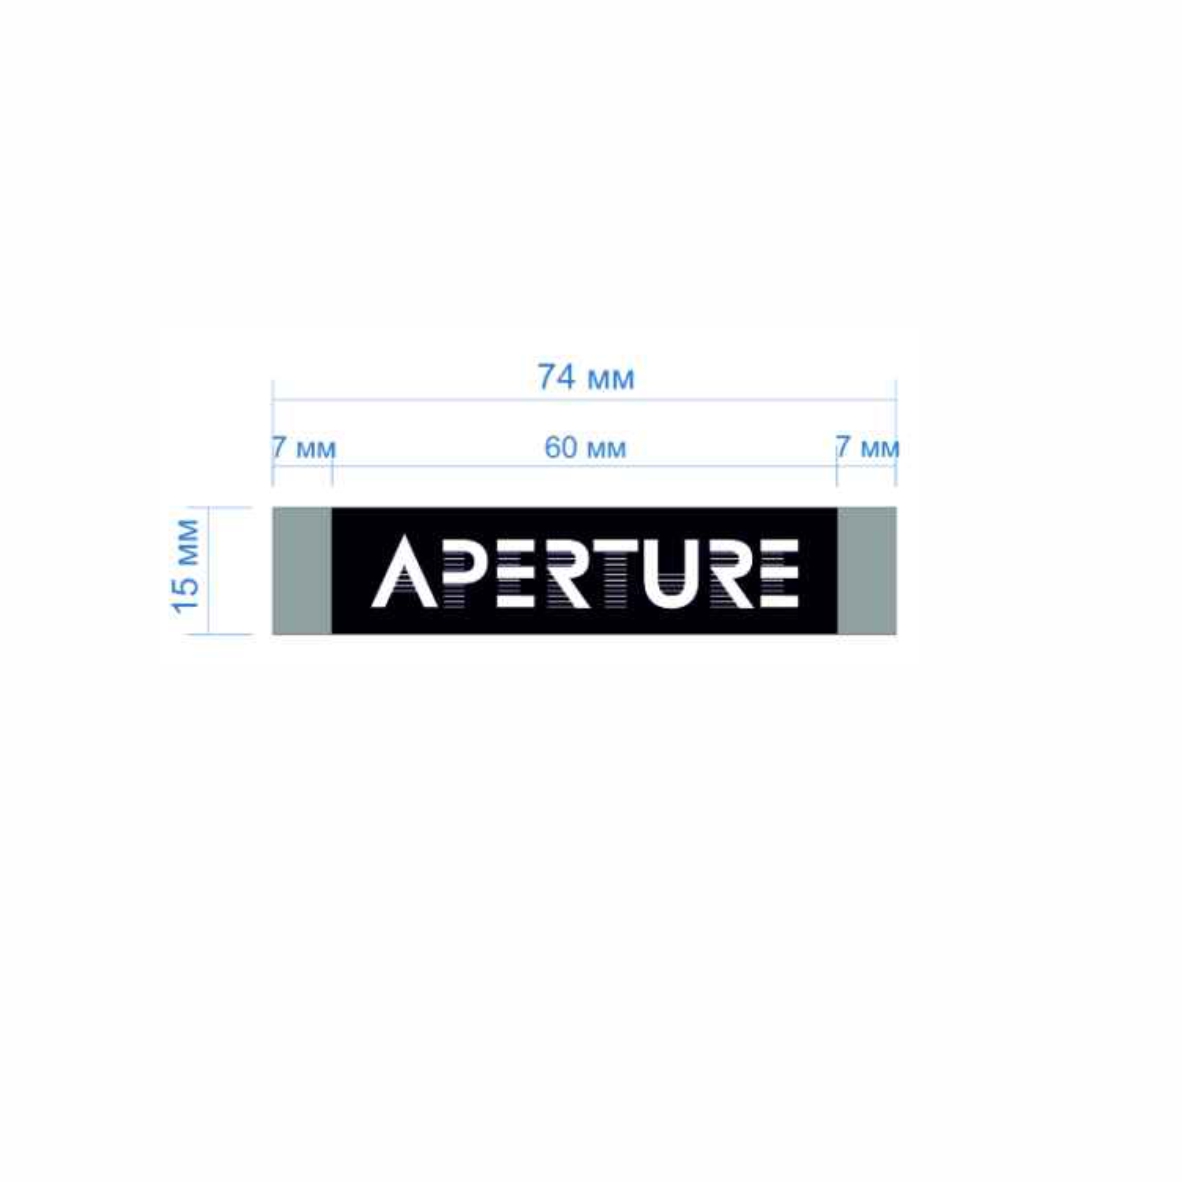 Этикетка тканевая Apperture 1,5см черная и белый лого /70 atki/, шт. Вышивка / этикетка тканевая